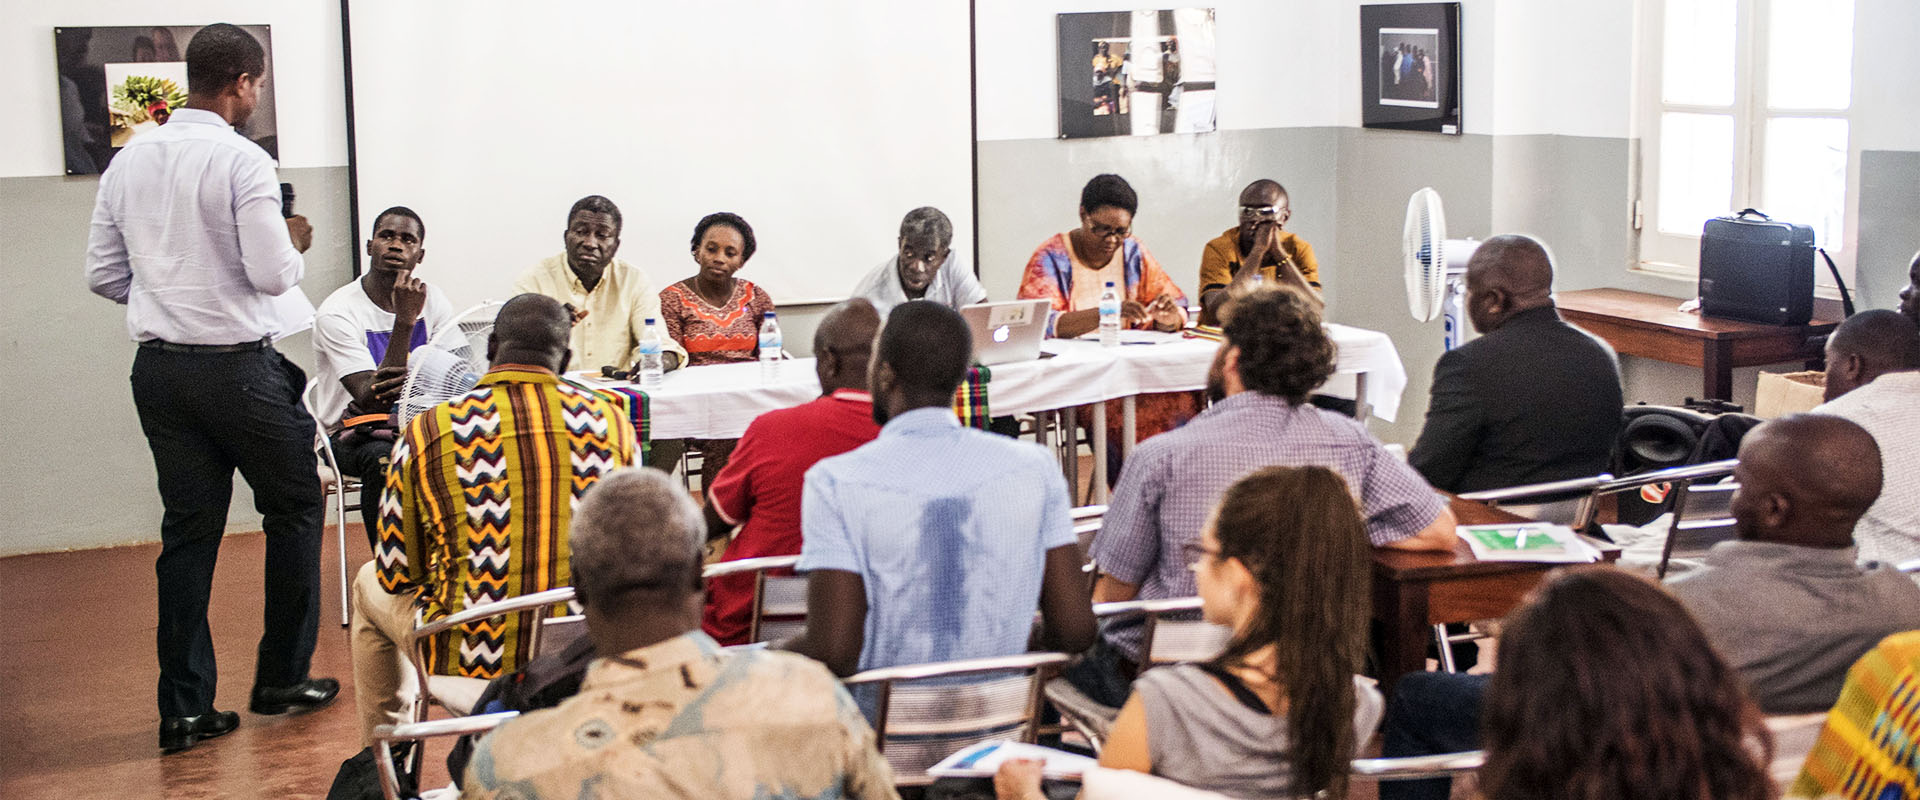 conferenza imprese cooperative spettatori Guinea Bissau Mani Tese 2017